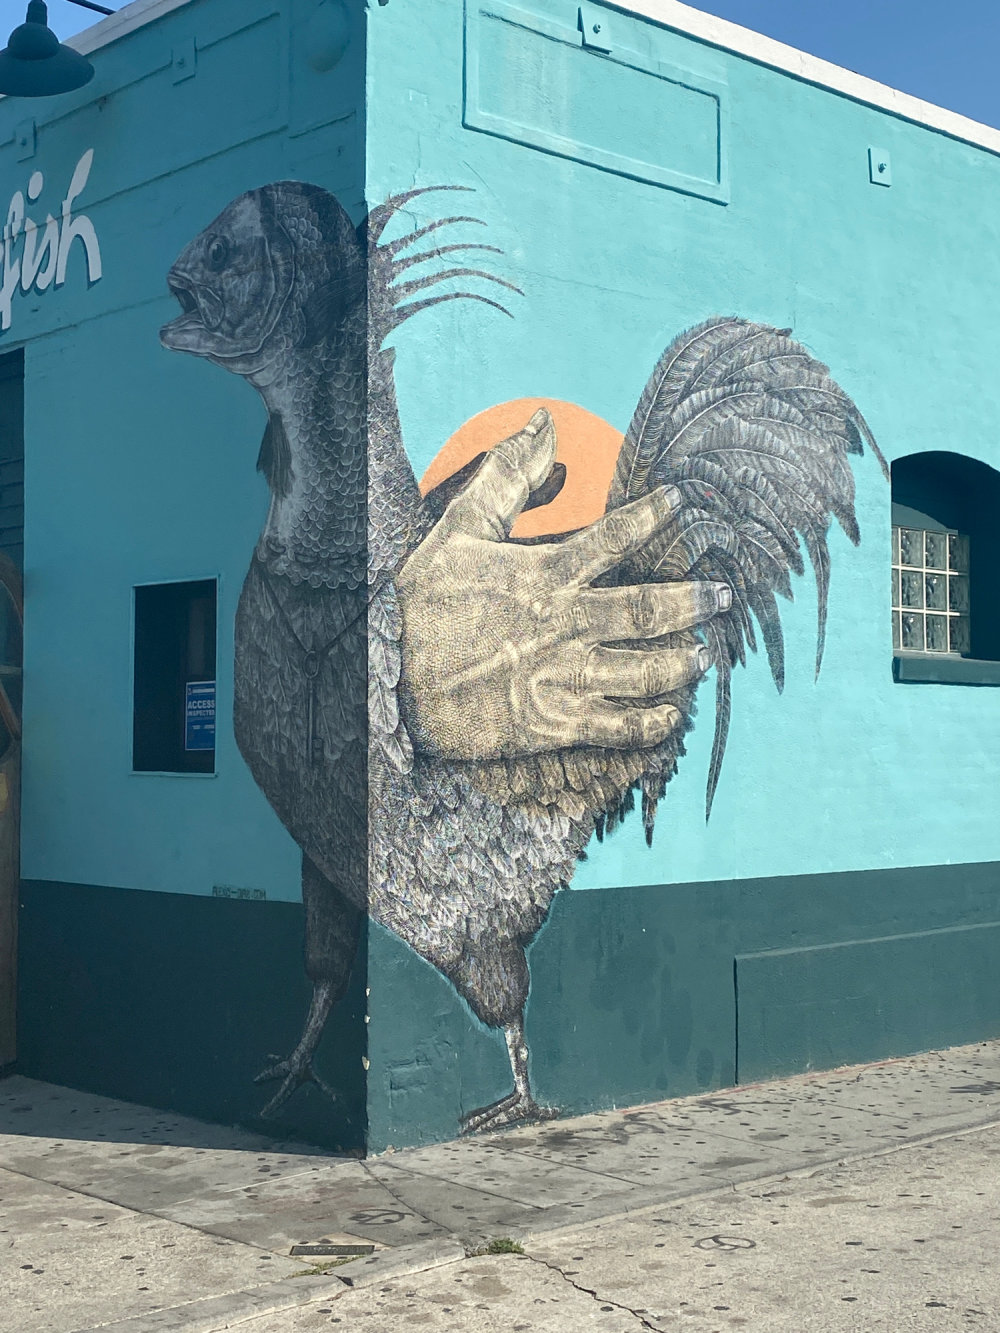 mural in Los Angeles by artist Alexis Diaz.